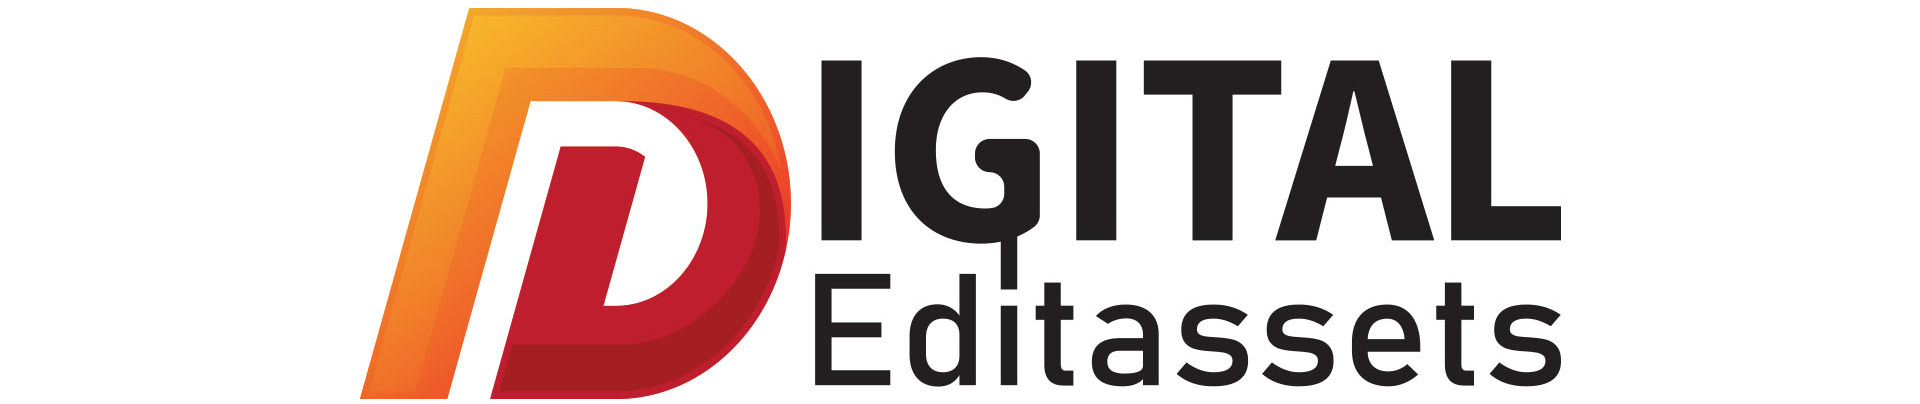 Digital Edit Assets's profile banner